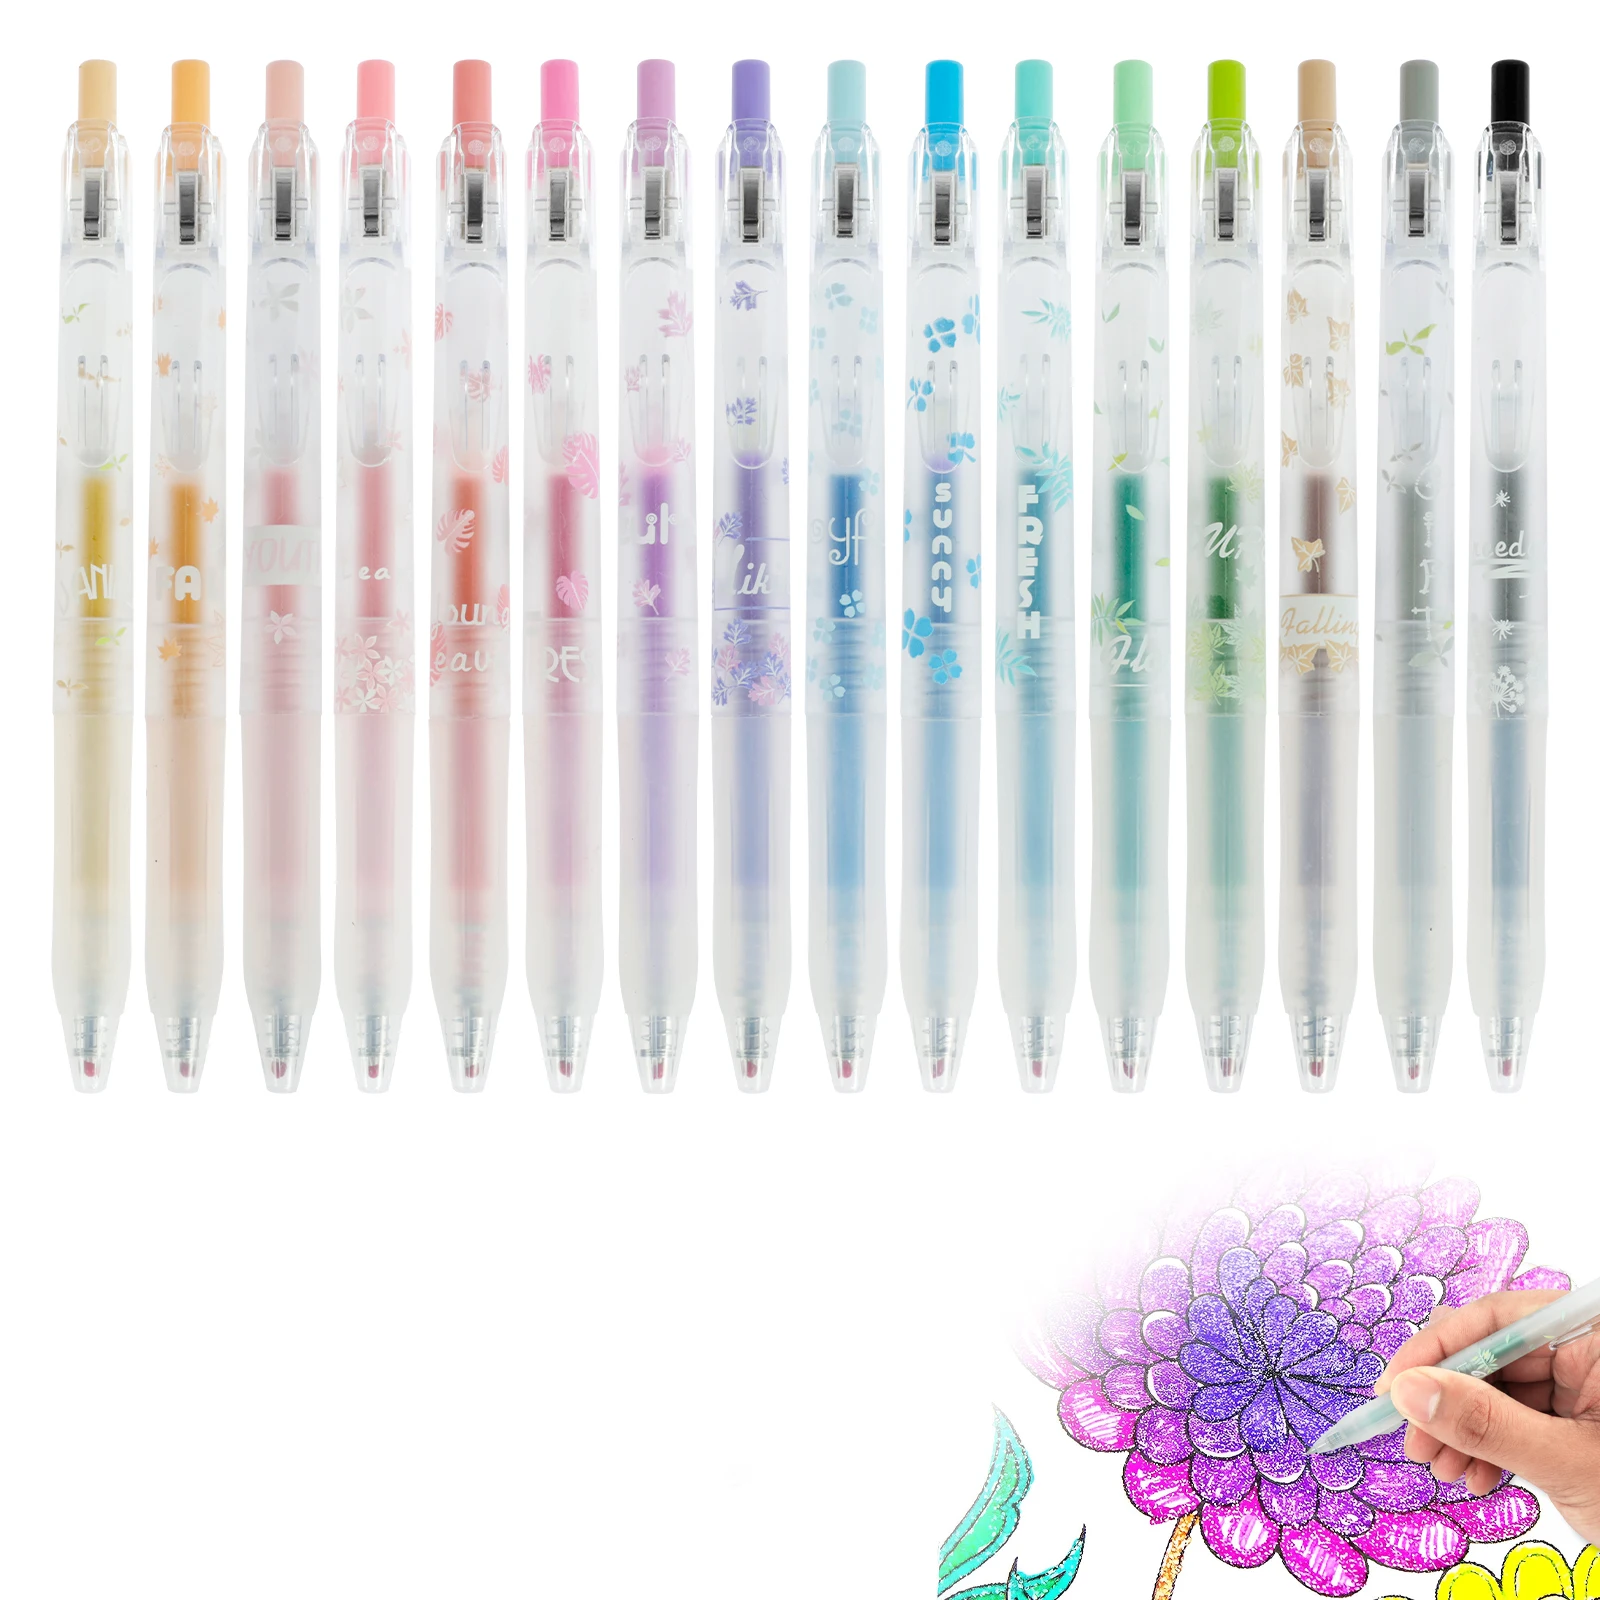 

Блестящие гелевые ручки с зажимом для ручки, 16 шт., разноцветные гелевые ранцы 0,5 мм, Набор цветных гелевых ручек, выдвижная шариковая ручка